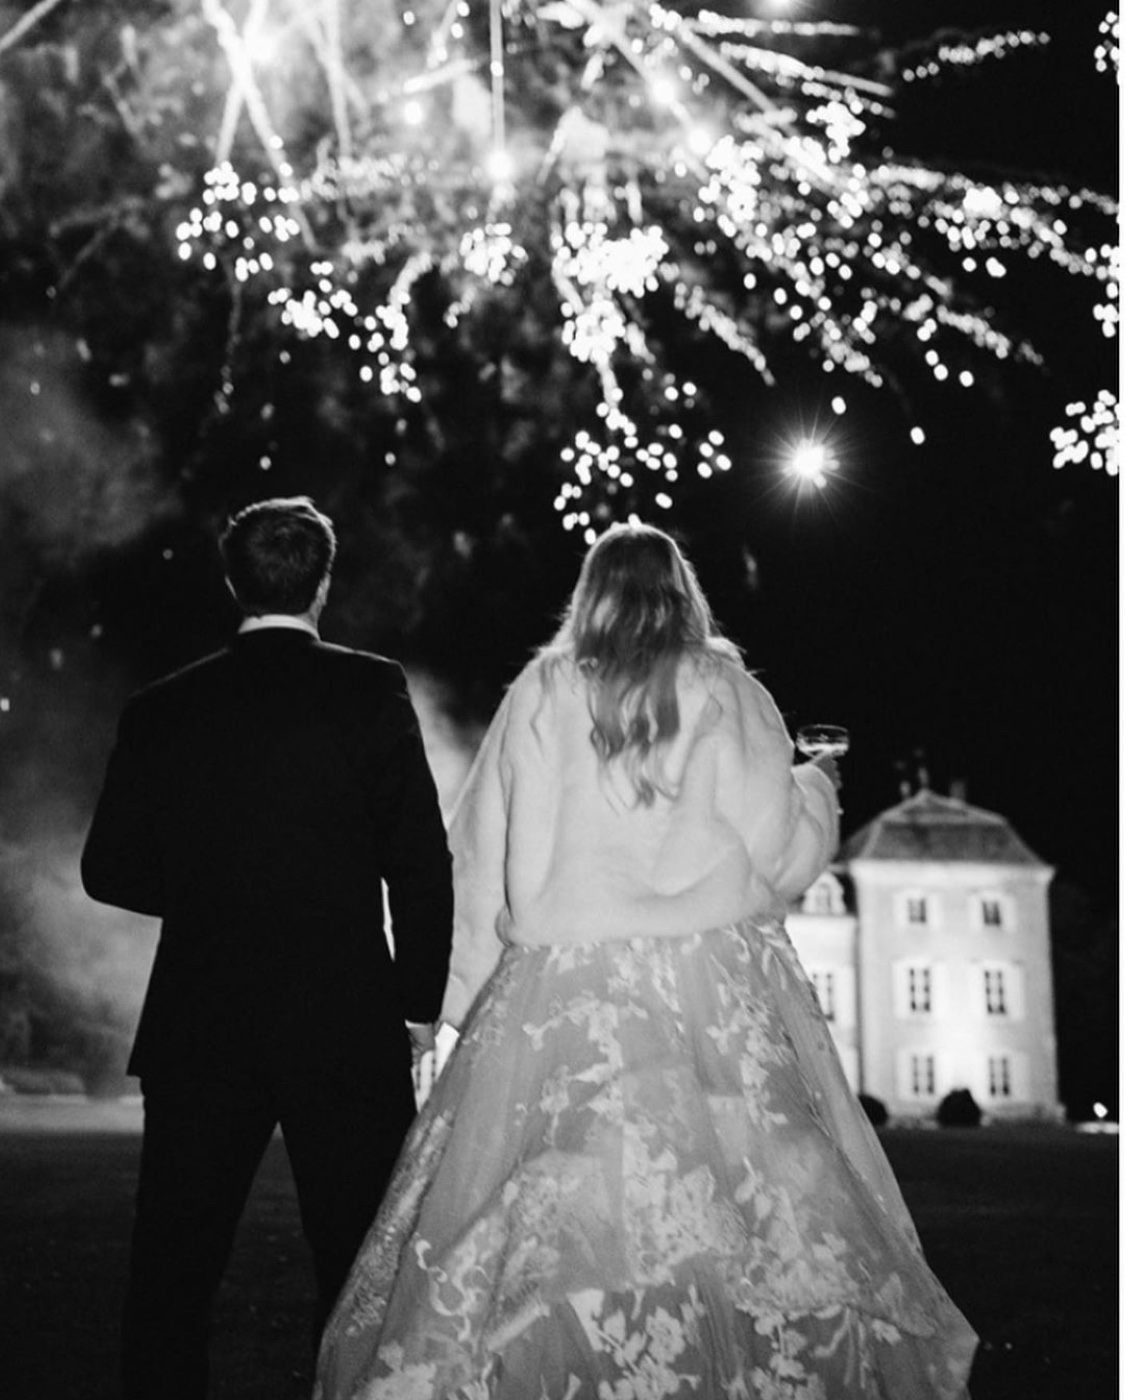 Love Story: A Monique Lhuillier Wedding Gown of Dreams at the Chateau de Varennes